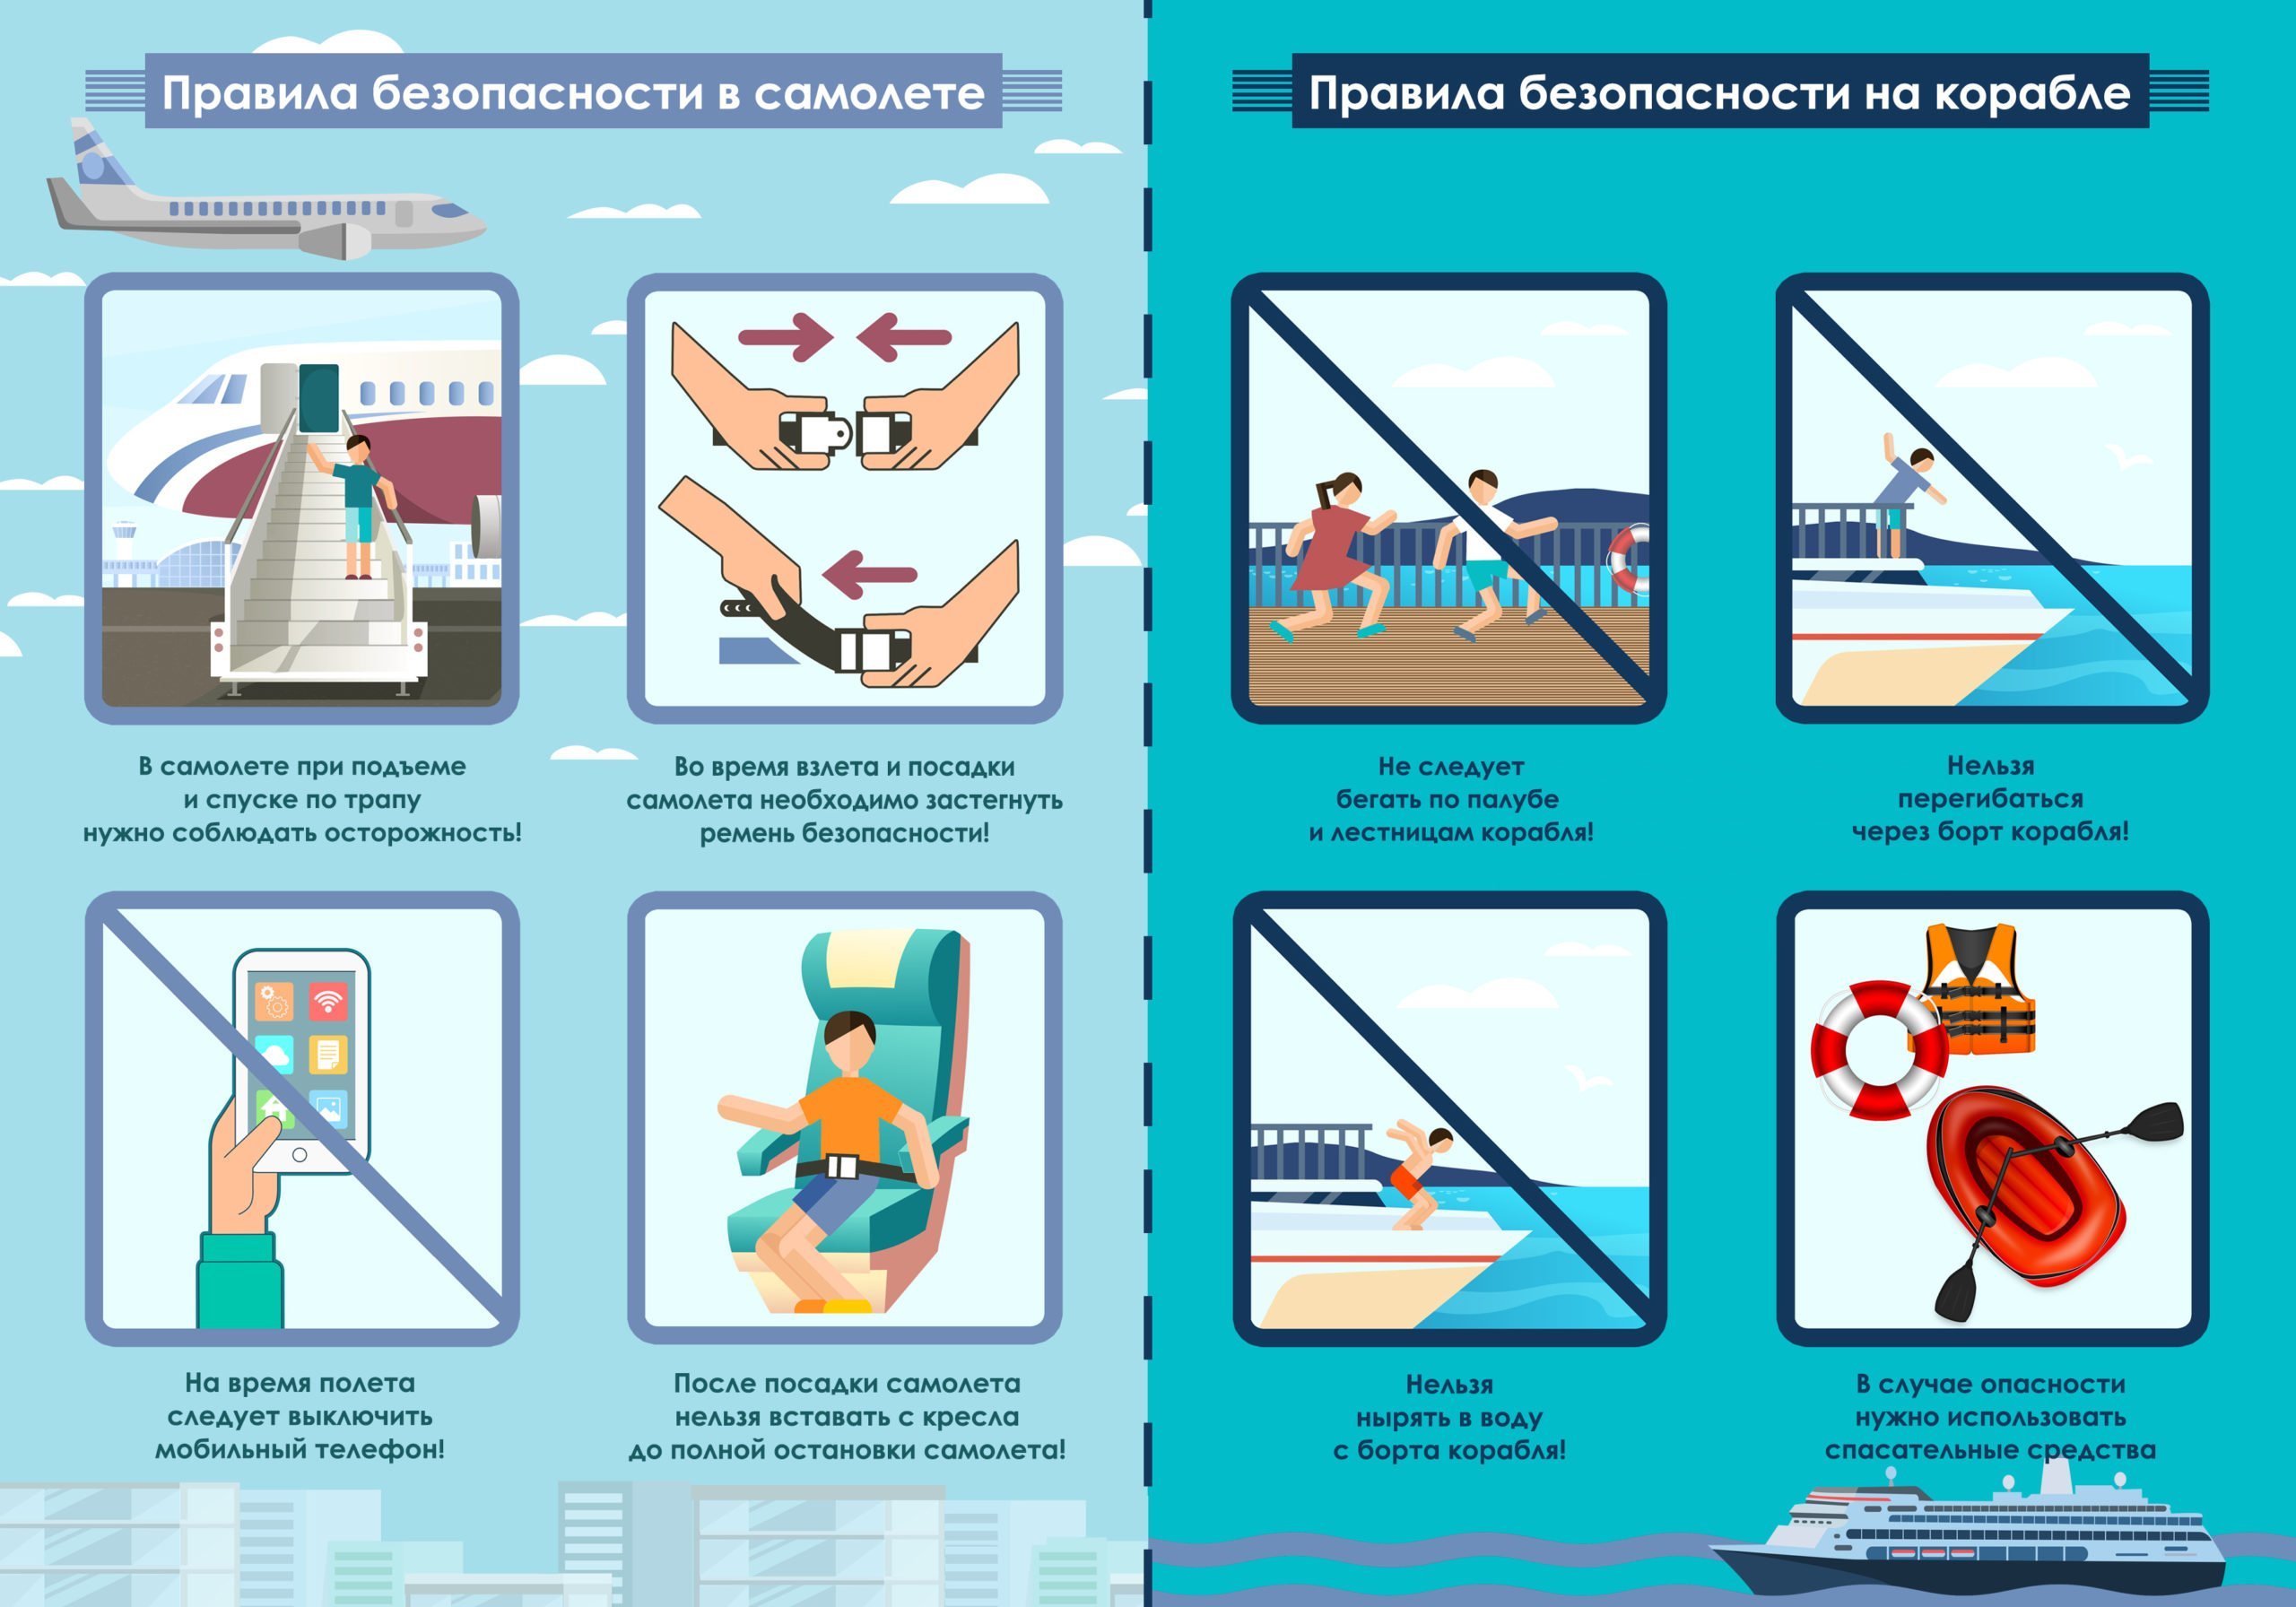 Эскиз плаката правила безопасности на самолете